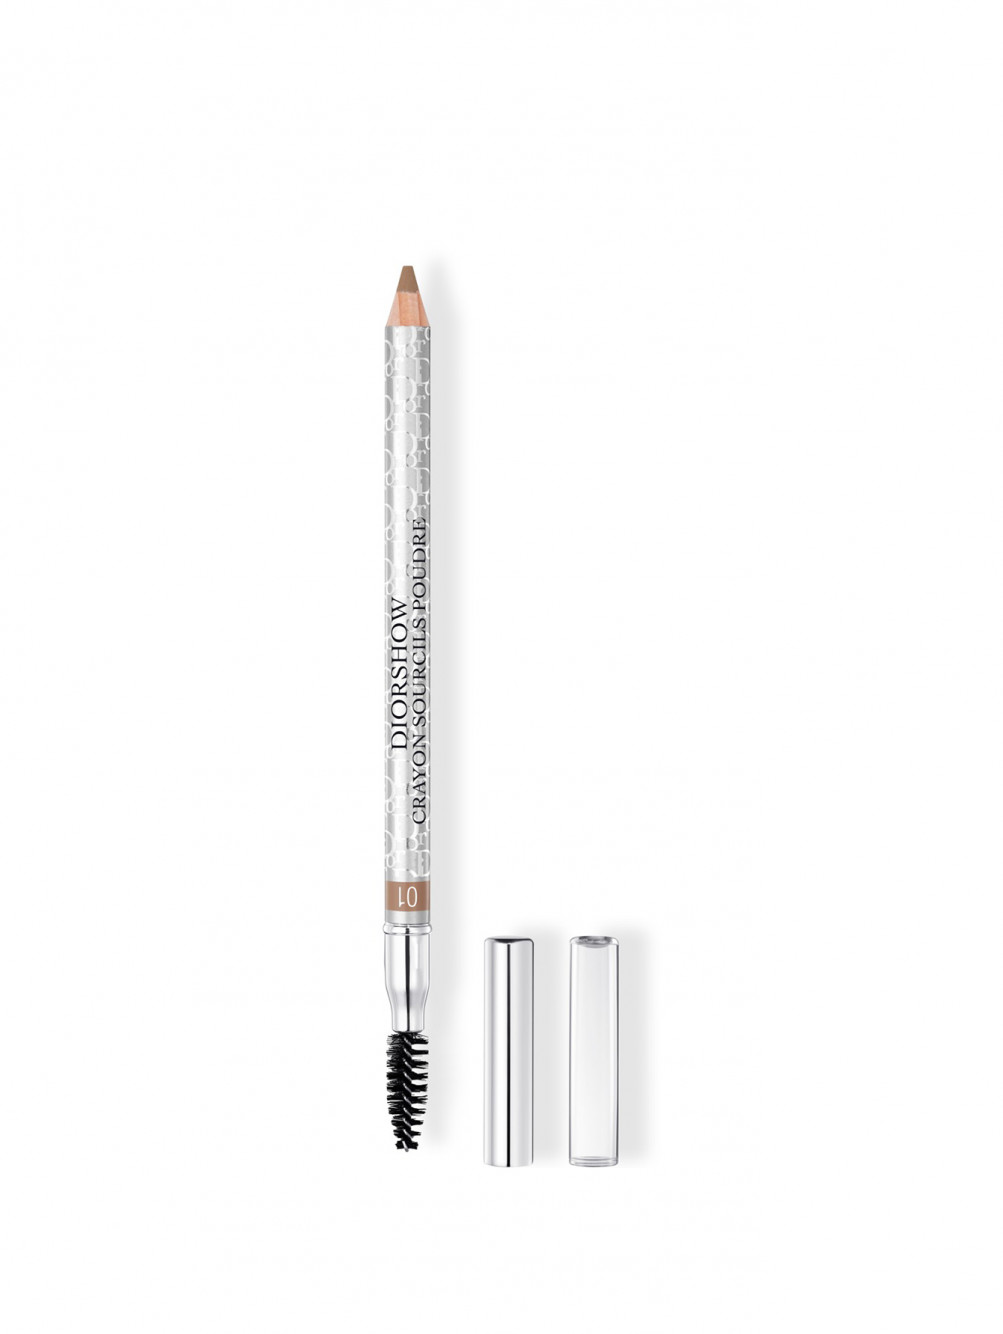 Diorshow Crayon Sourcils Poudre Водостойкий карандаш для бровей с точилкой 01 Блондин - Общий вид